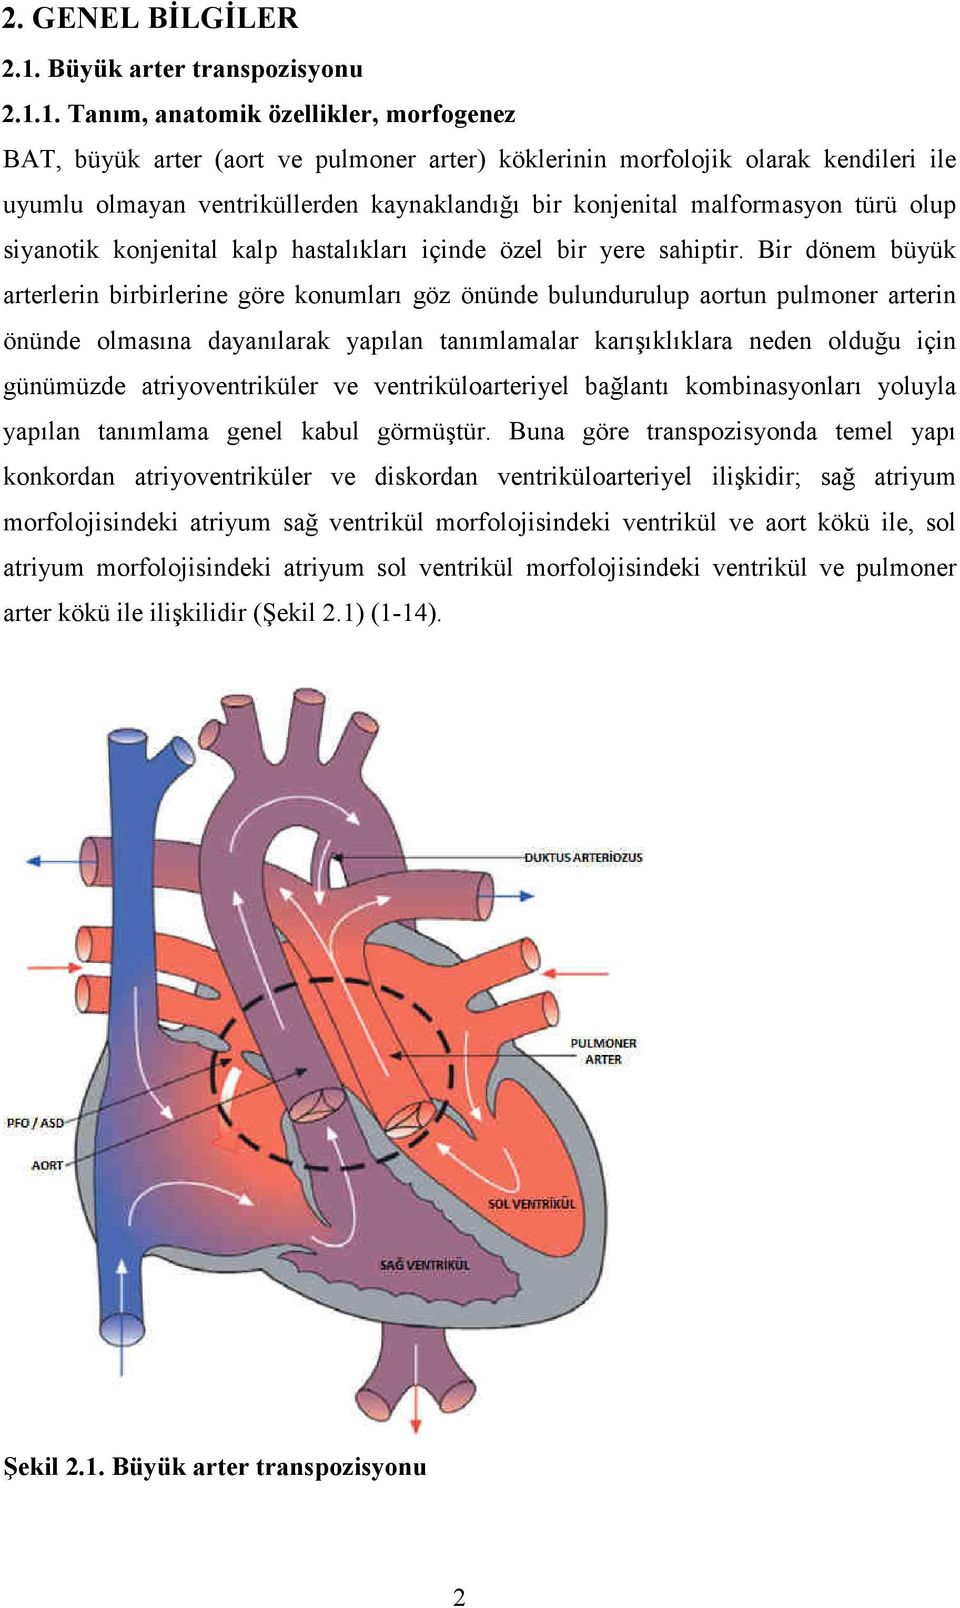 1. Tanım, anatomik özellikler, morfogenez BAT, büyük arter (aort ve pulmoner arter) köklerinin morfolojik olarak kendileri ile uyumlu olmayan ventriküllerden kaynaklandığı bir konjenital malformasyon